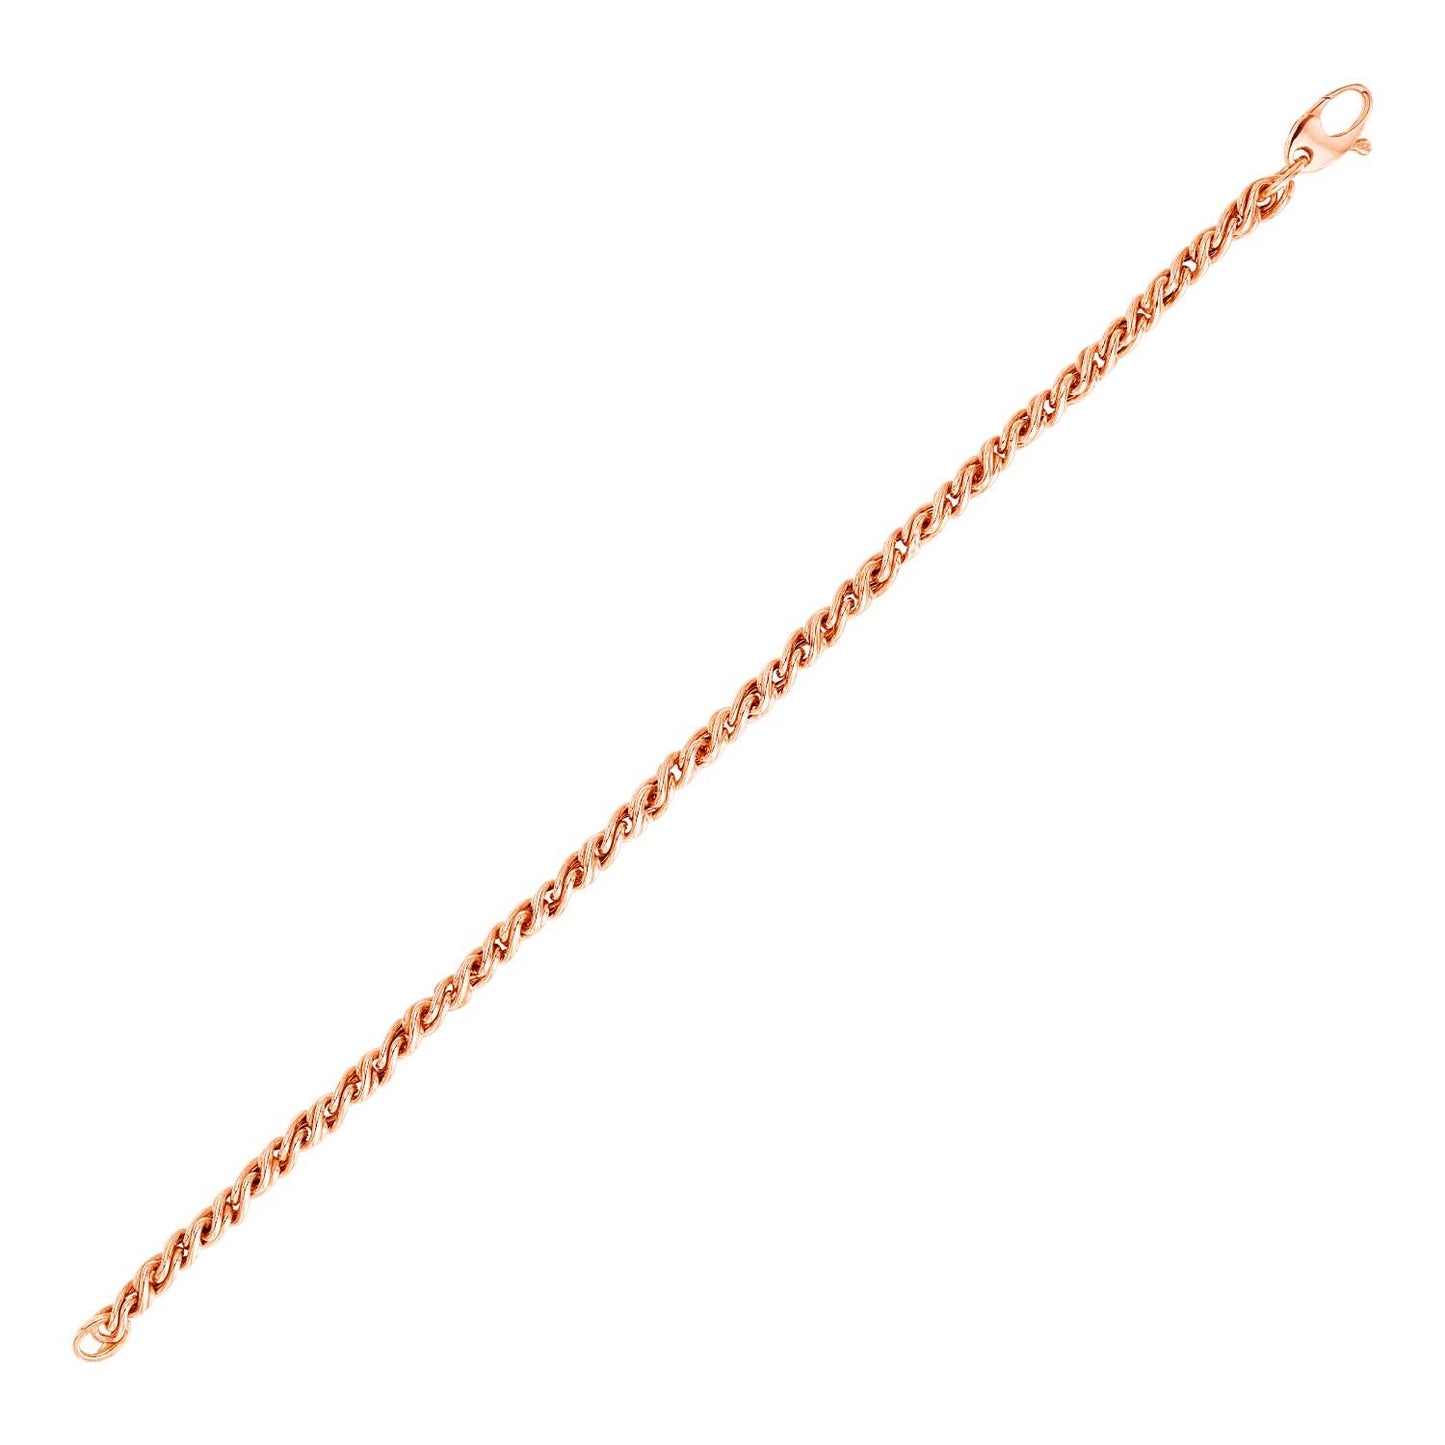 14k Rose Gold 7 1/2 inch Braid Link Bracelet